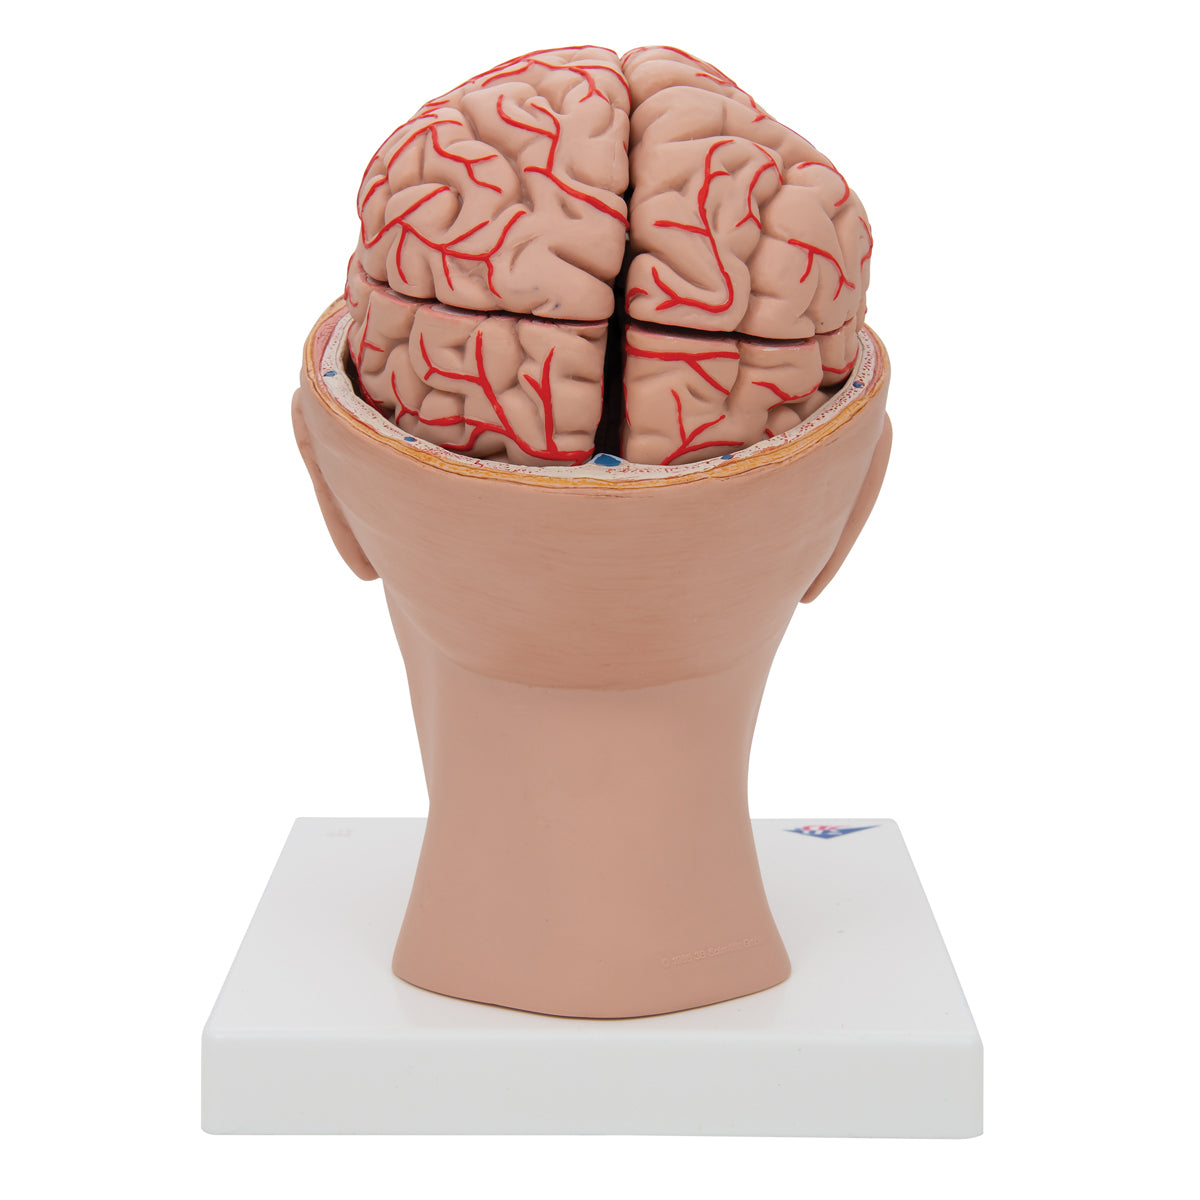 Hjärnmodell som visar artärer, vener och den inre skallbasen. Hjärnan kan tas ut och delas i 8